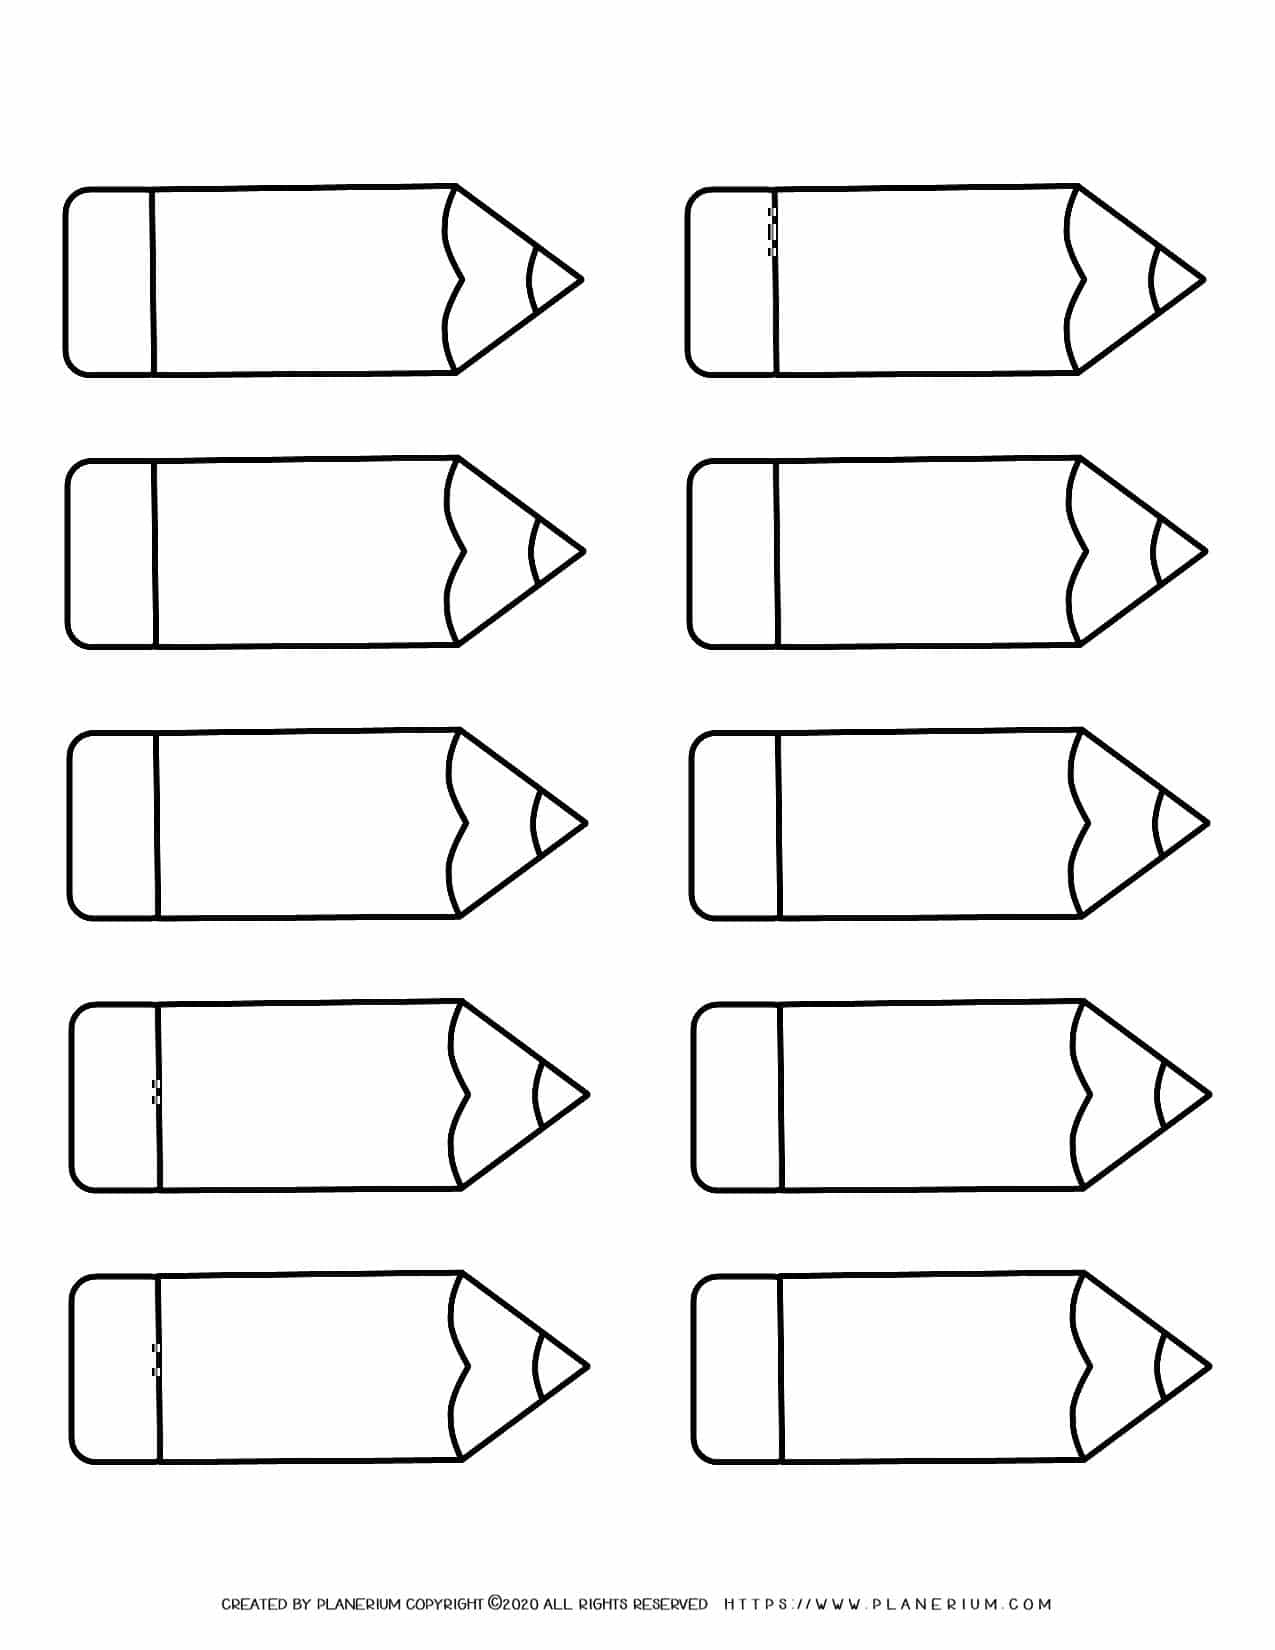 Ten Pencils Template | Planerium